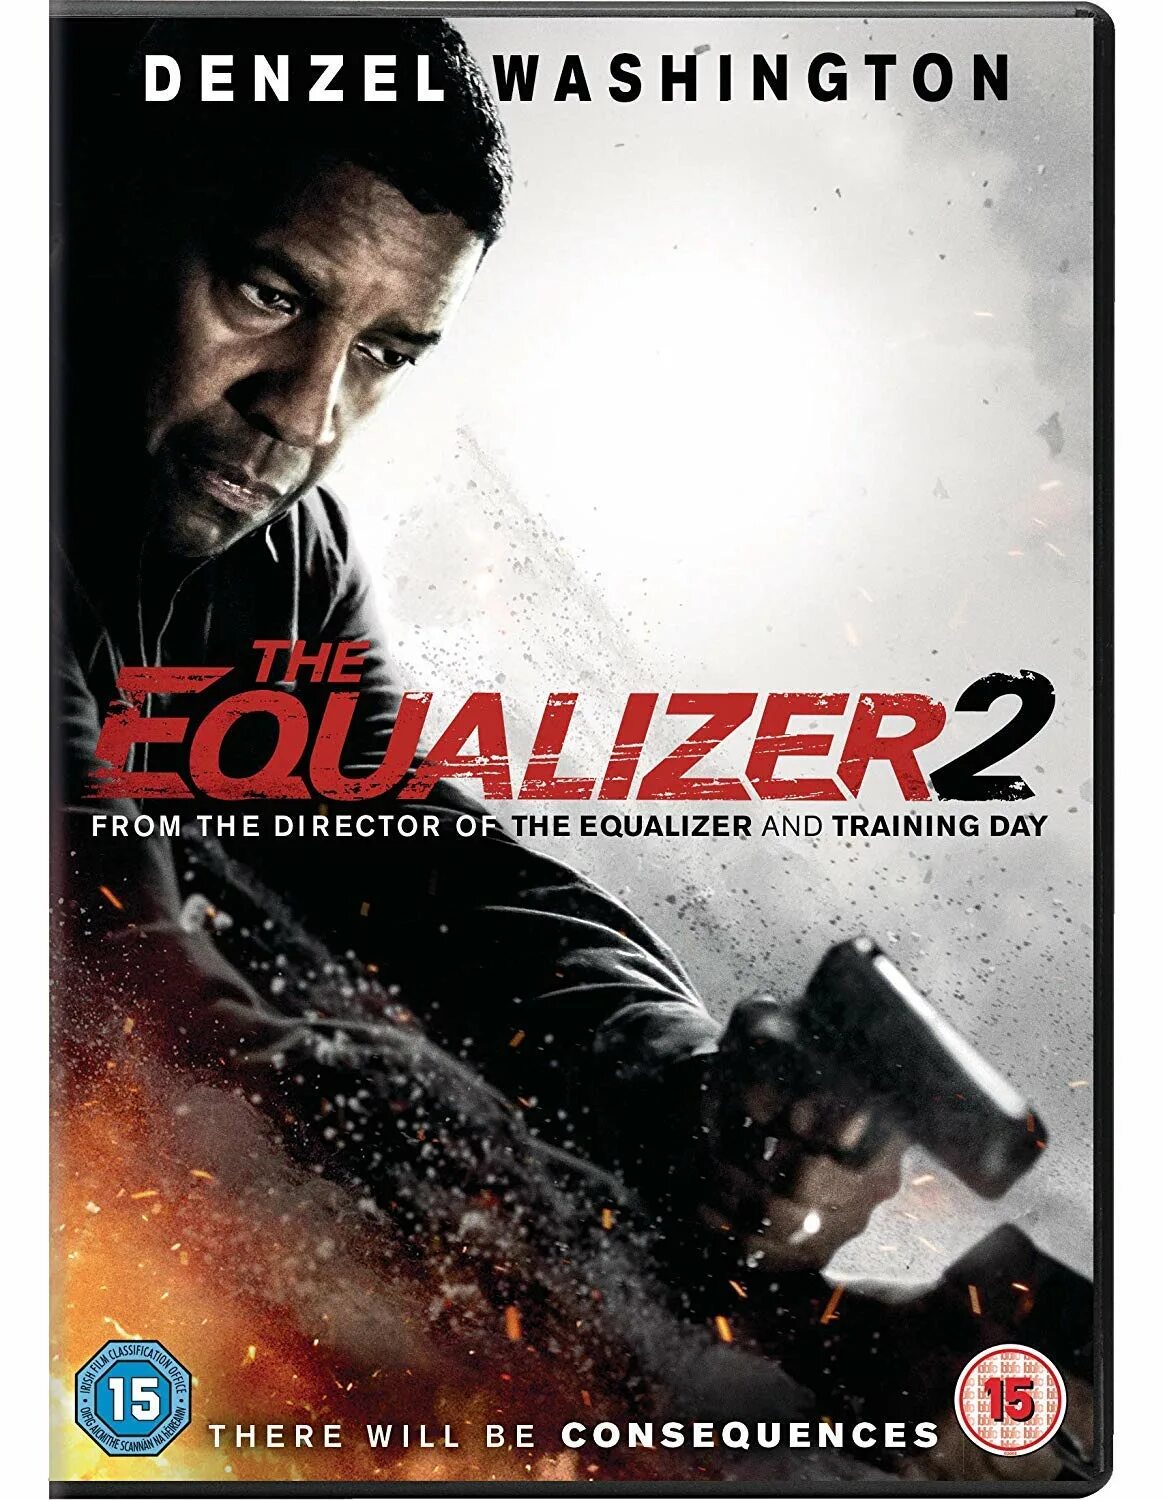 Equalizer 2. Дензел Вашингтон Великий уравнитель. Уравнитель 2. Великий уравнитель 2 (4k UHD Blu-ray). The_Equalizer_2 Великий уравнитель 2 (2018).